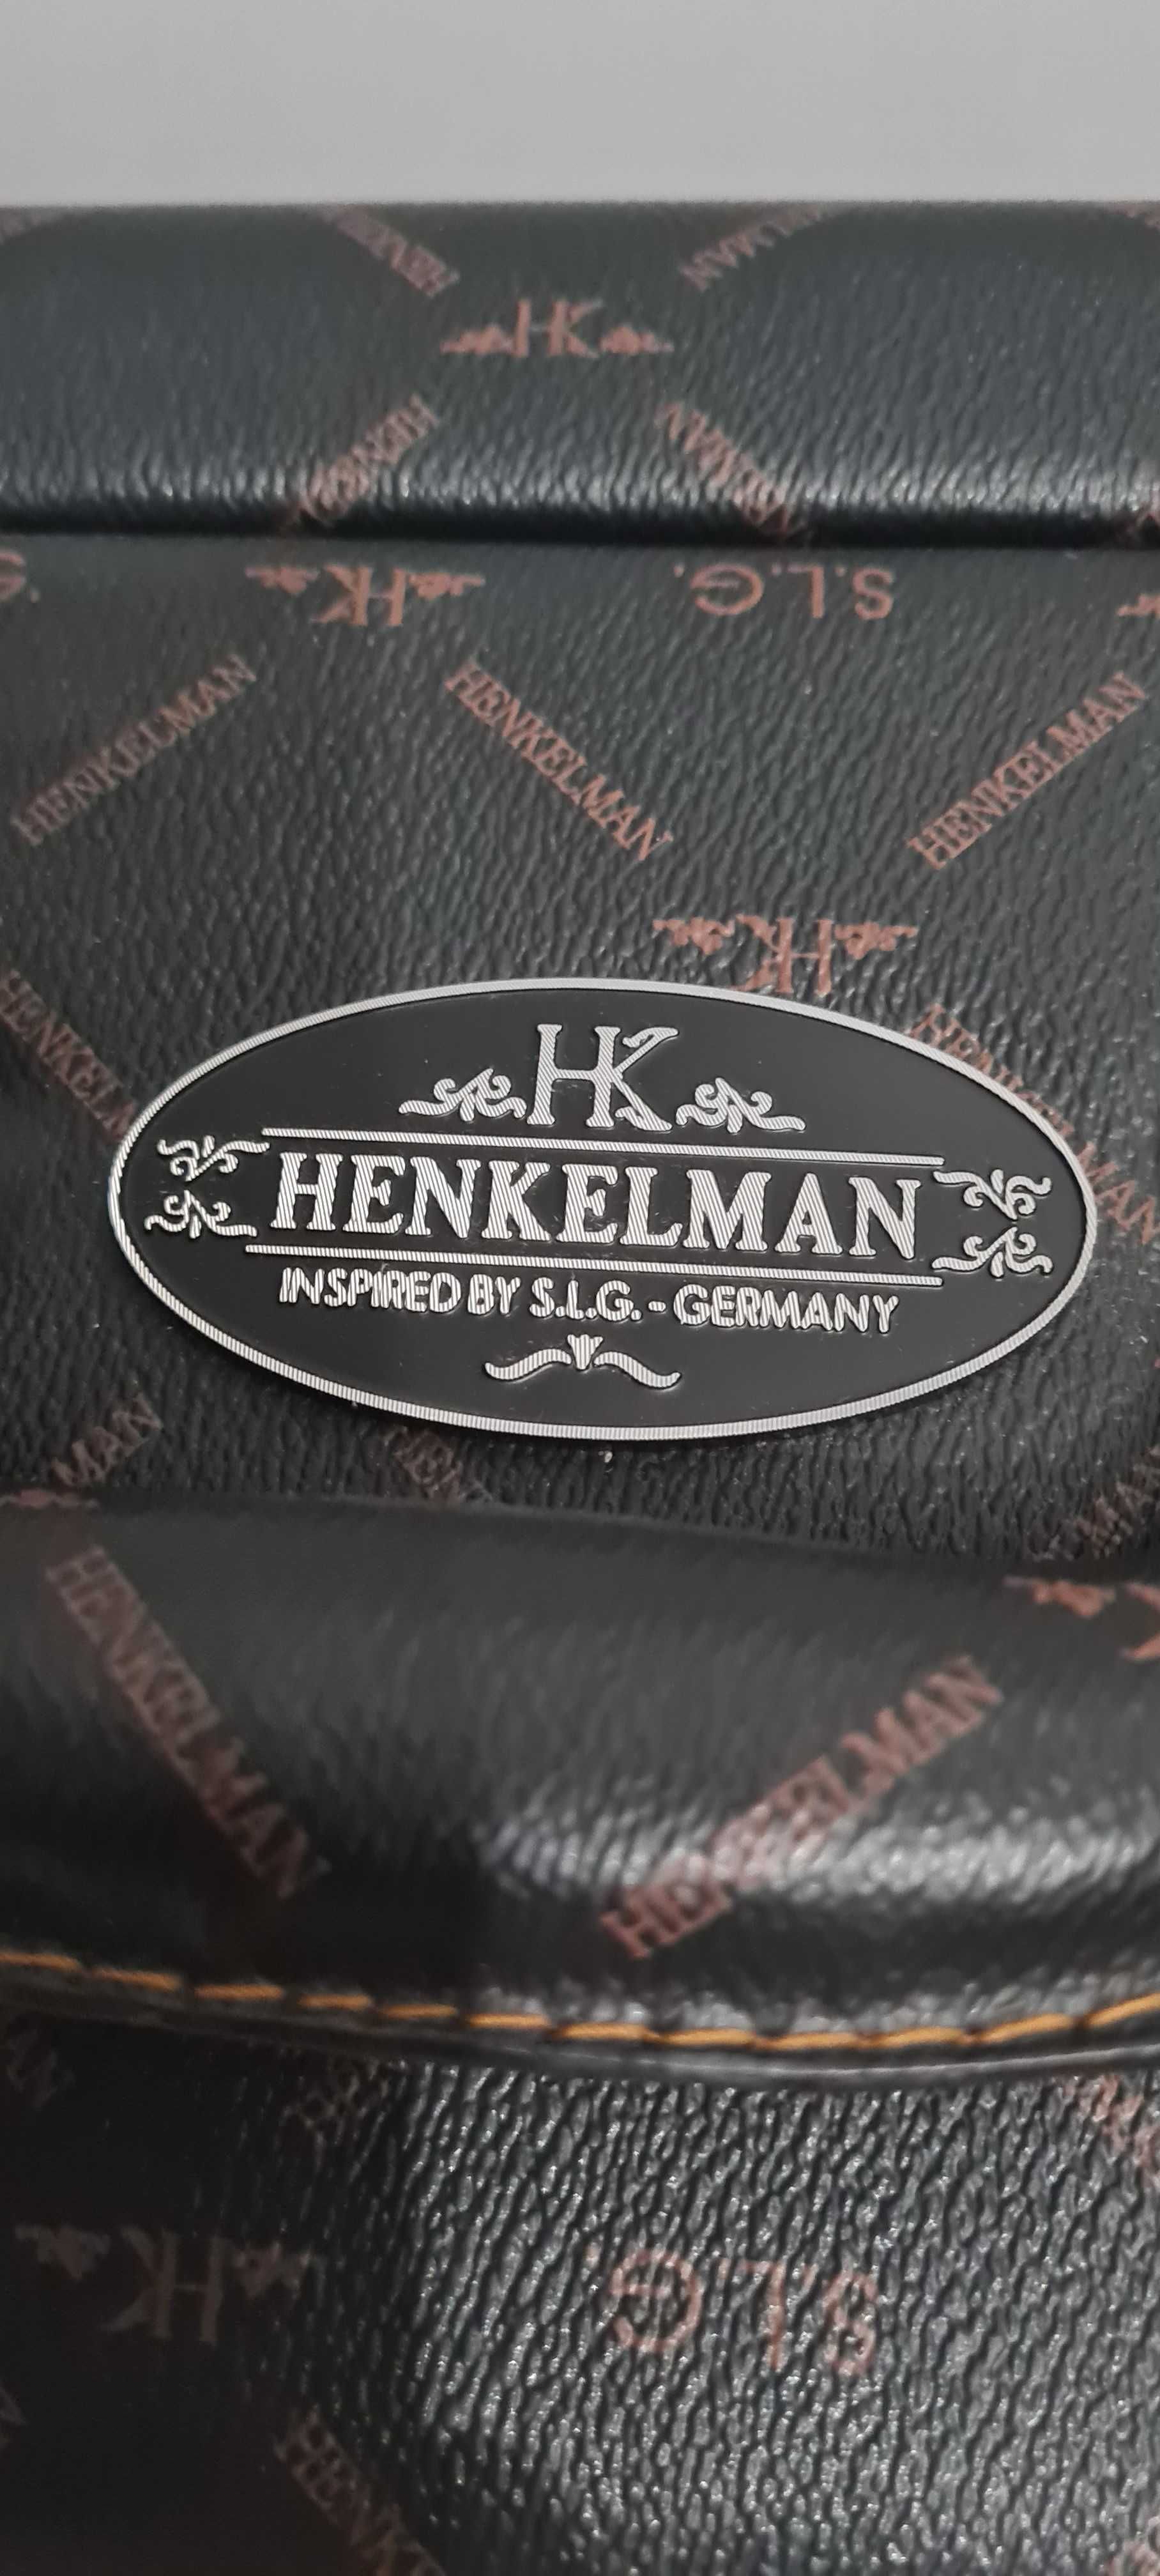 Duża walizka Henkelman - np dekoracja butiku